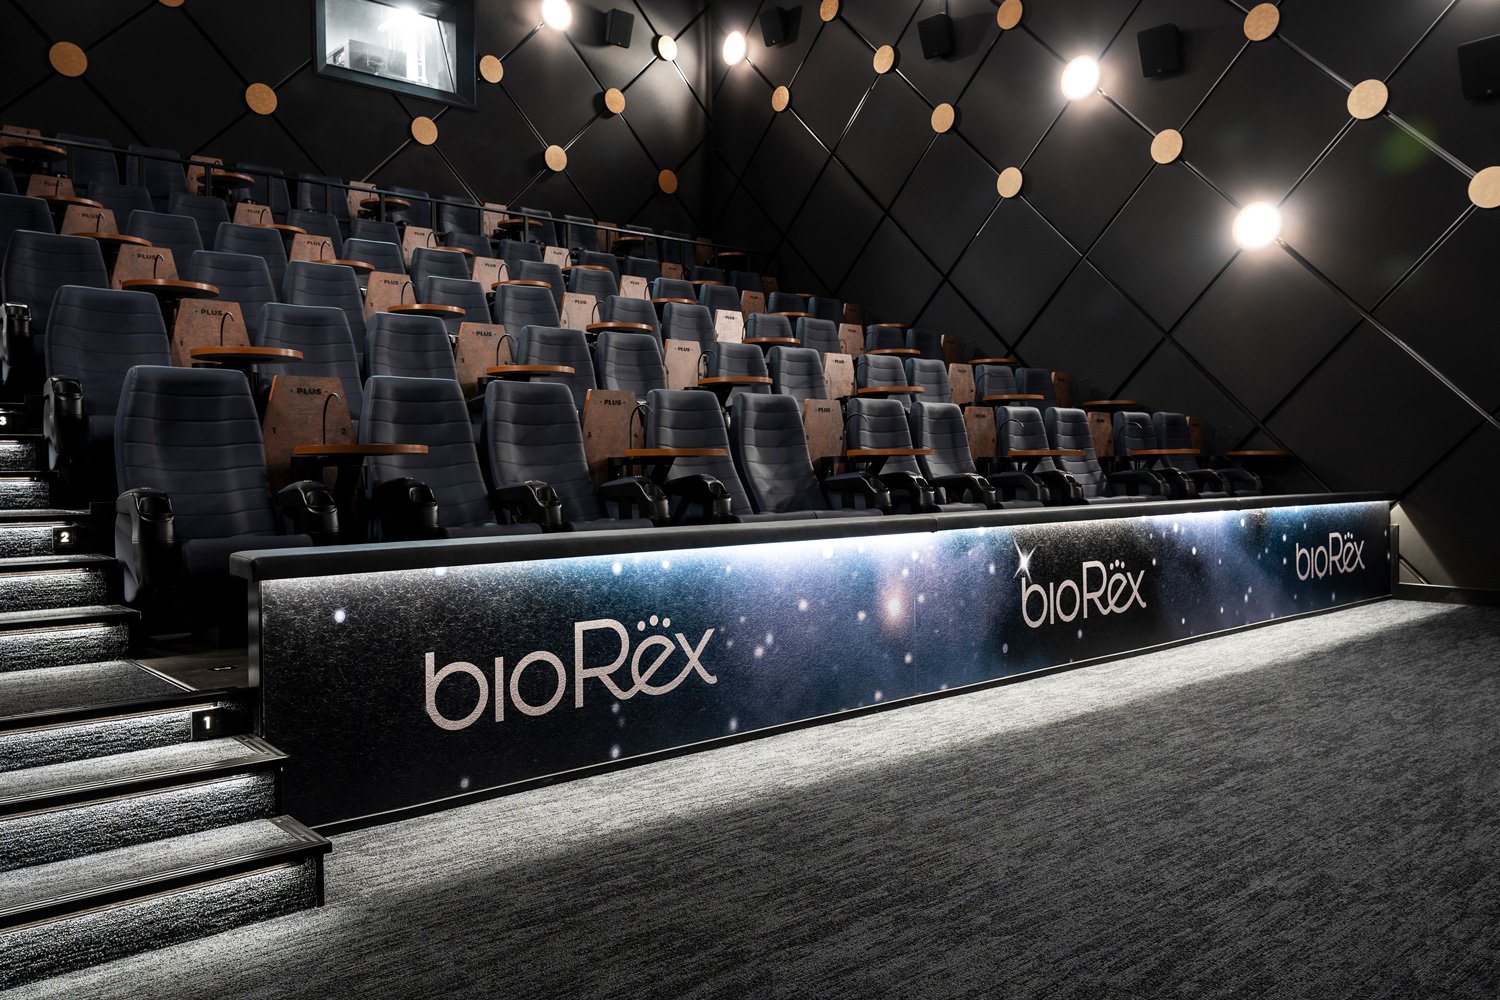 BioRex käyttää kaikissa teatterisaleissaan tähtikuvioista tapetointia, joko istuinpaikkojen etuosassa tai joissakin saleissa myös salien seinissä.